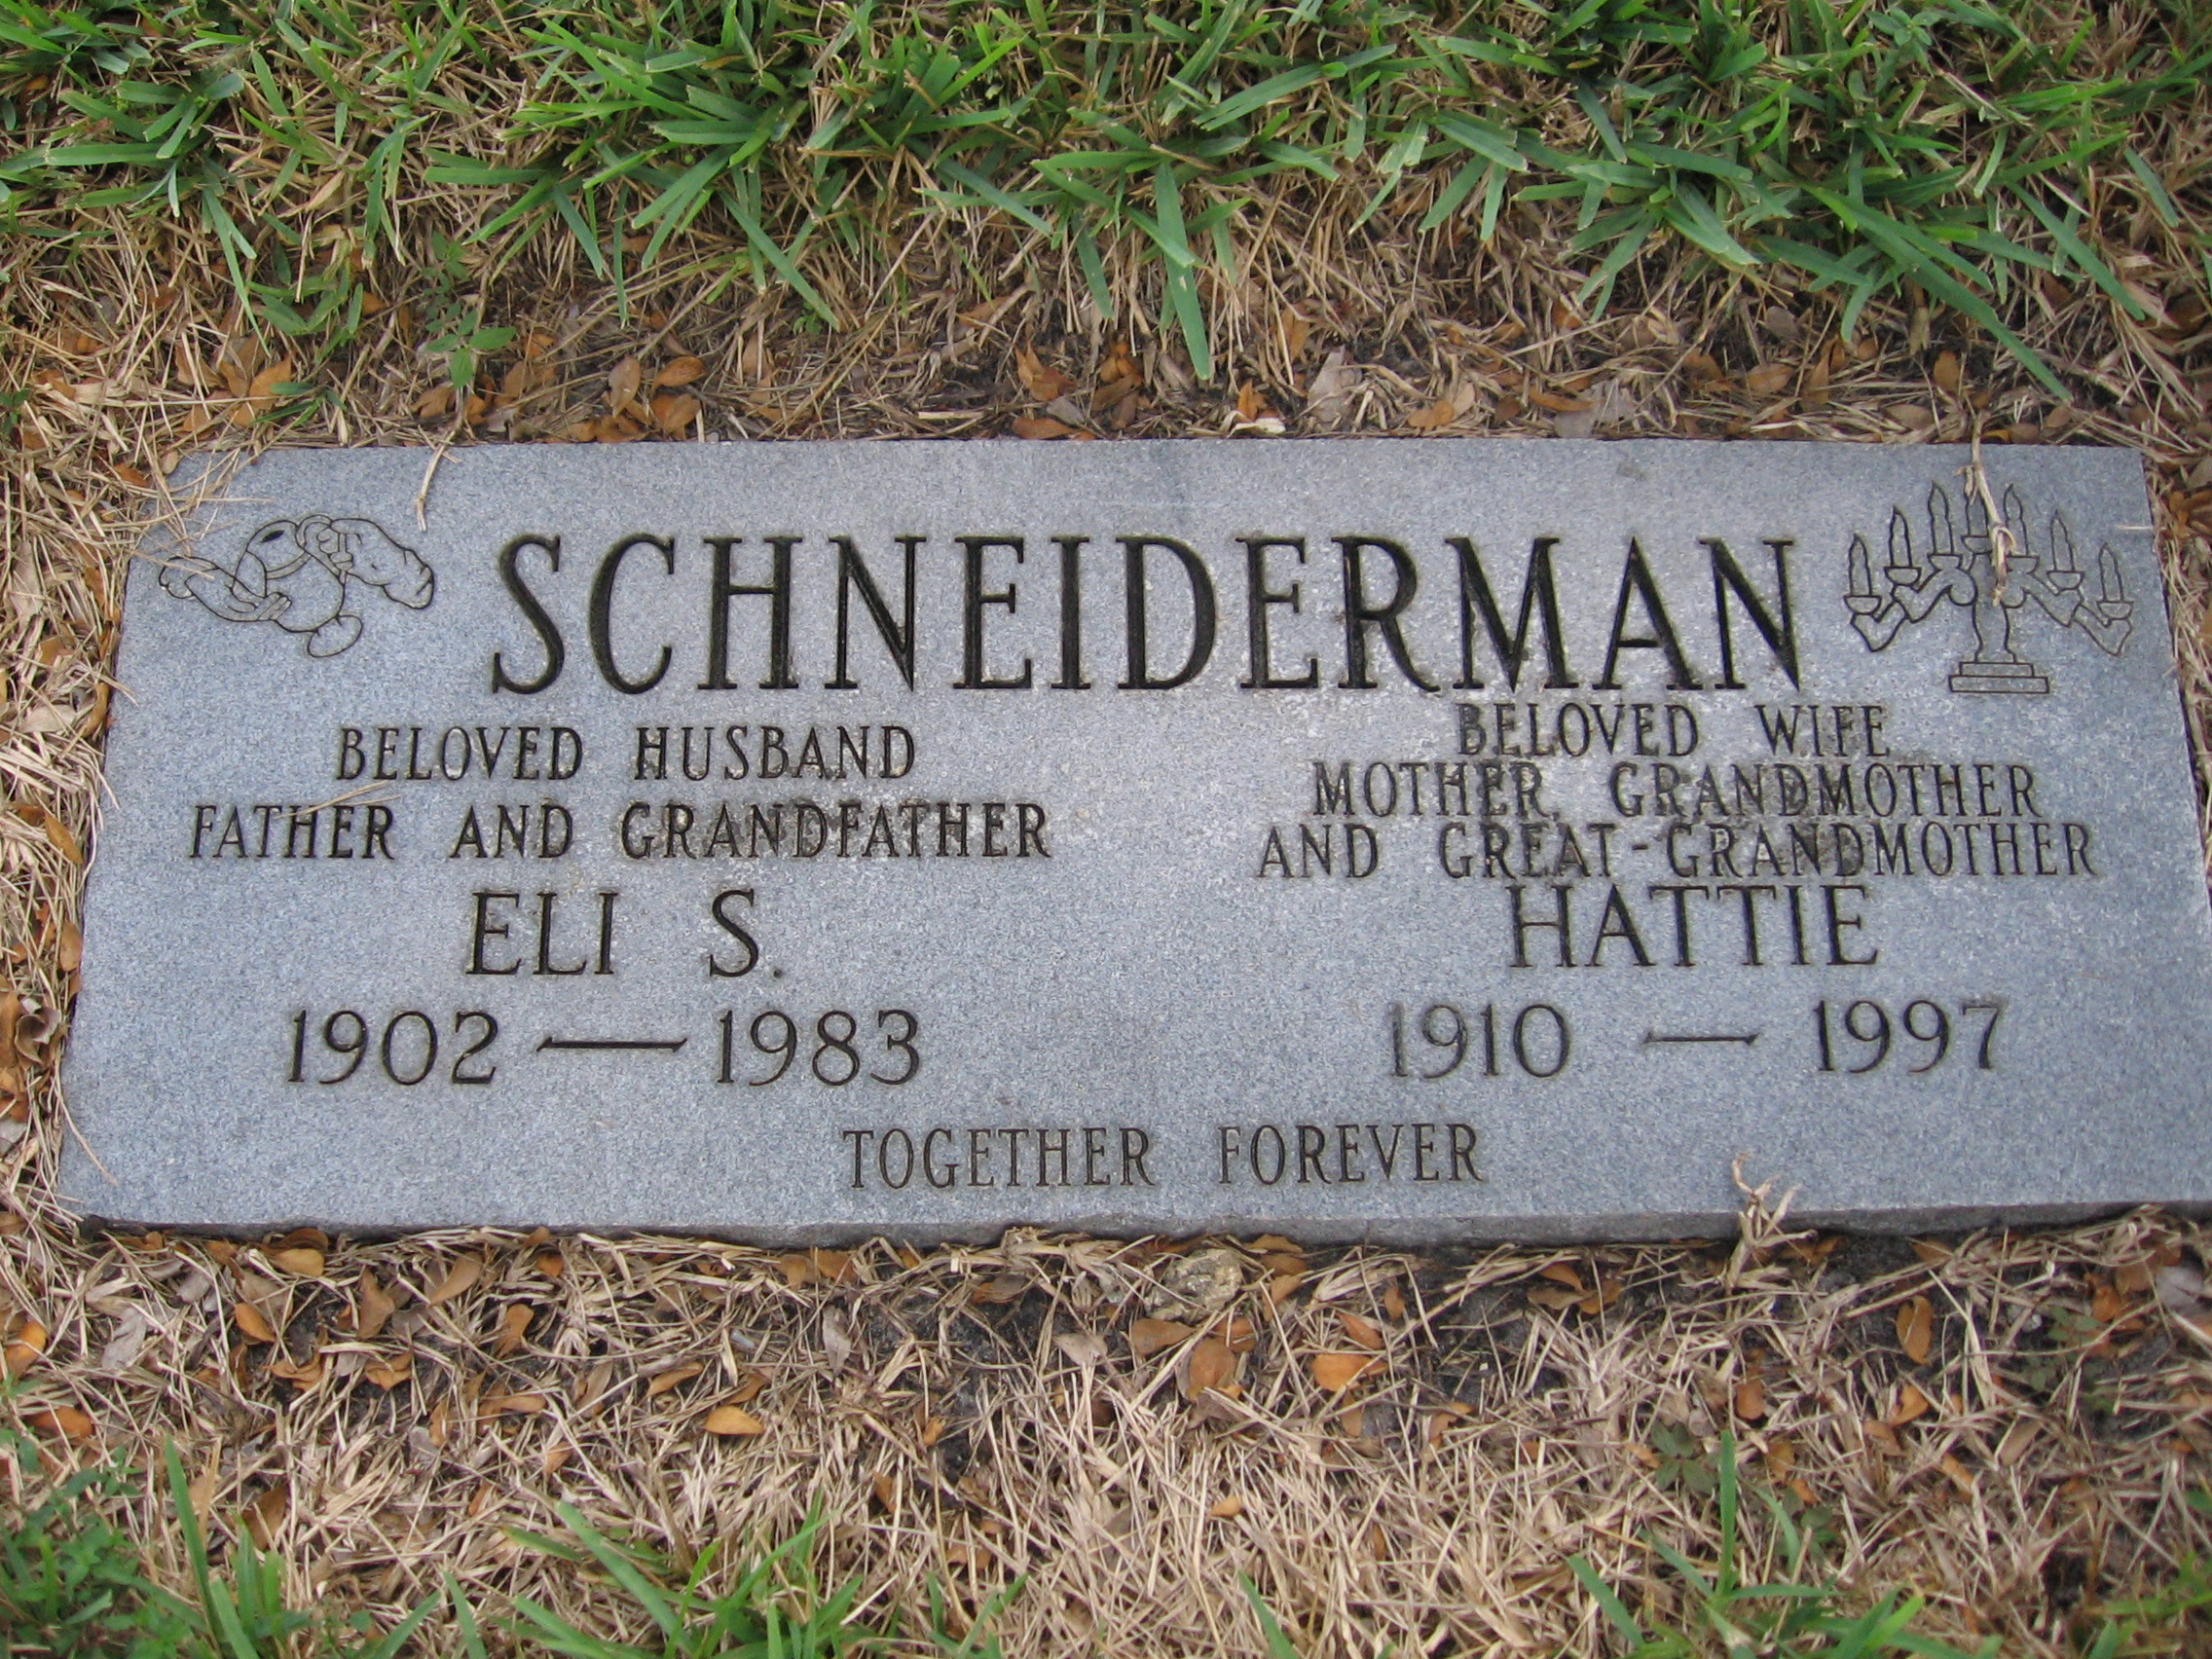 Eli S Schneiderman